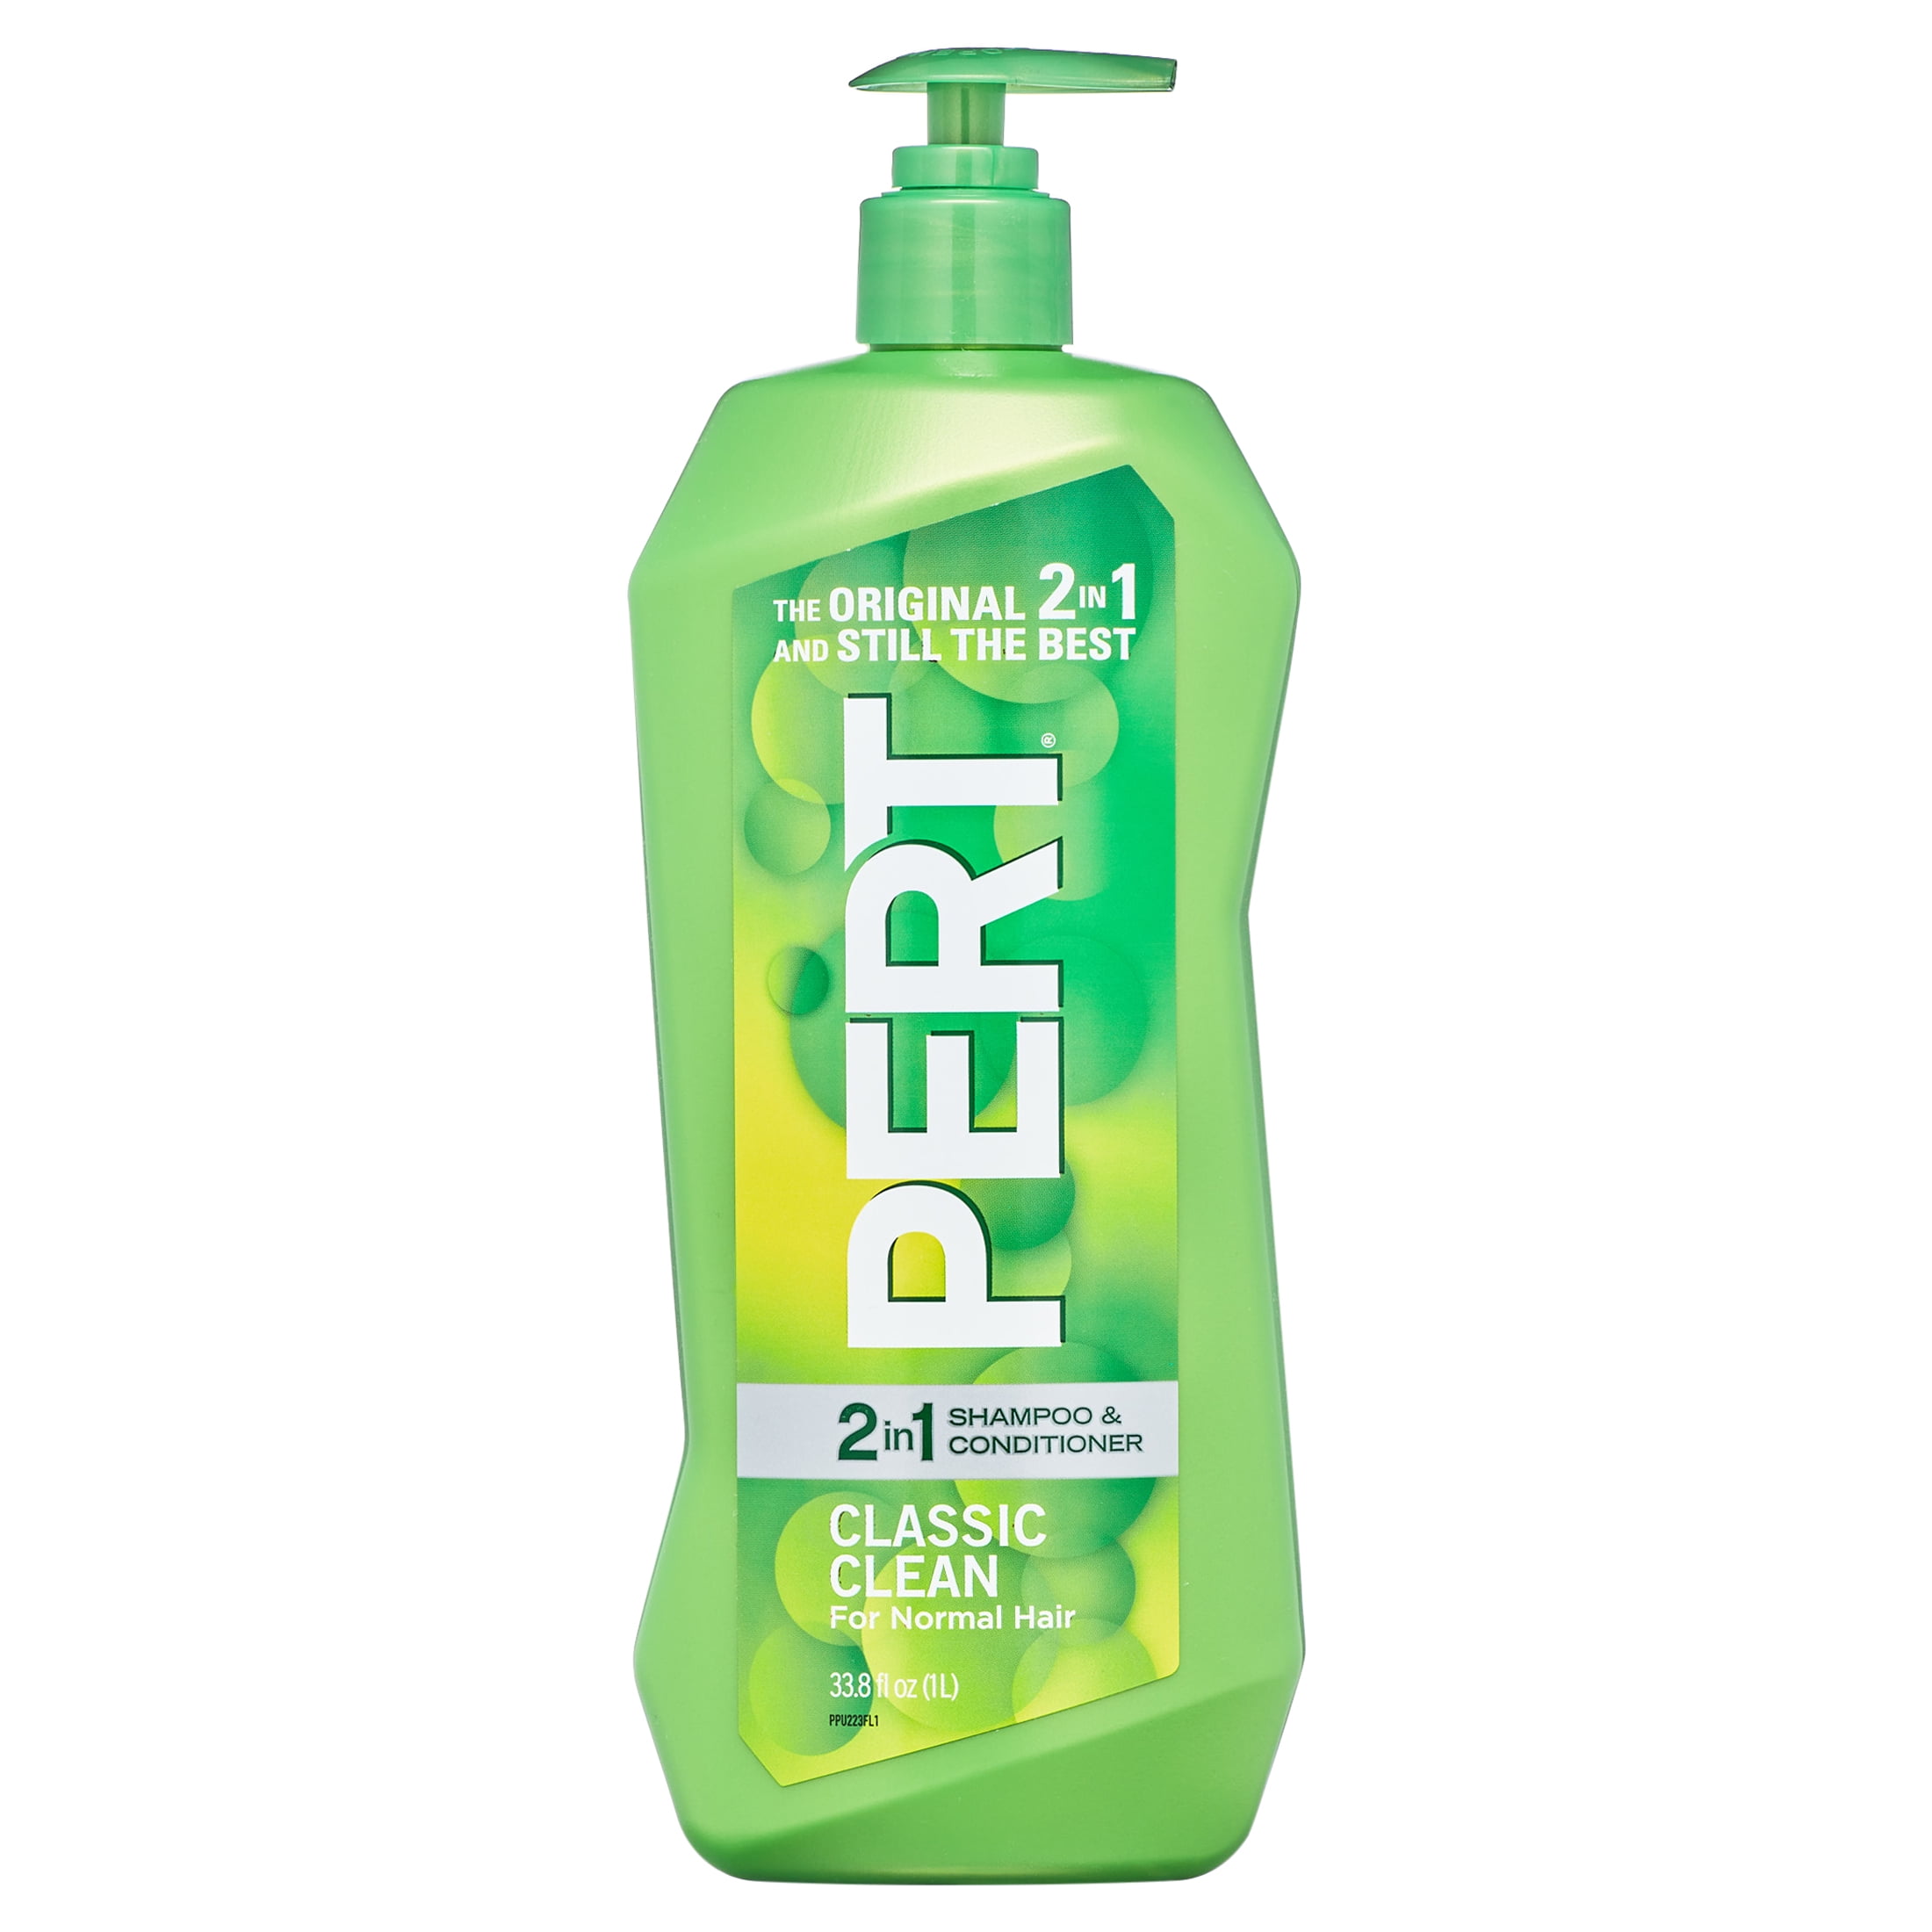 Suave Kids' Spider-man 3-in-1 Pump Shampoo + Conditioner + Body Wash -  Fresh Spider-sense - 28 Fl Oz : Target